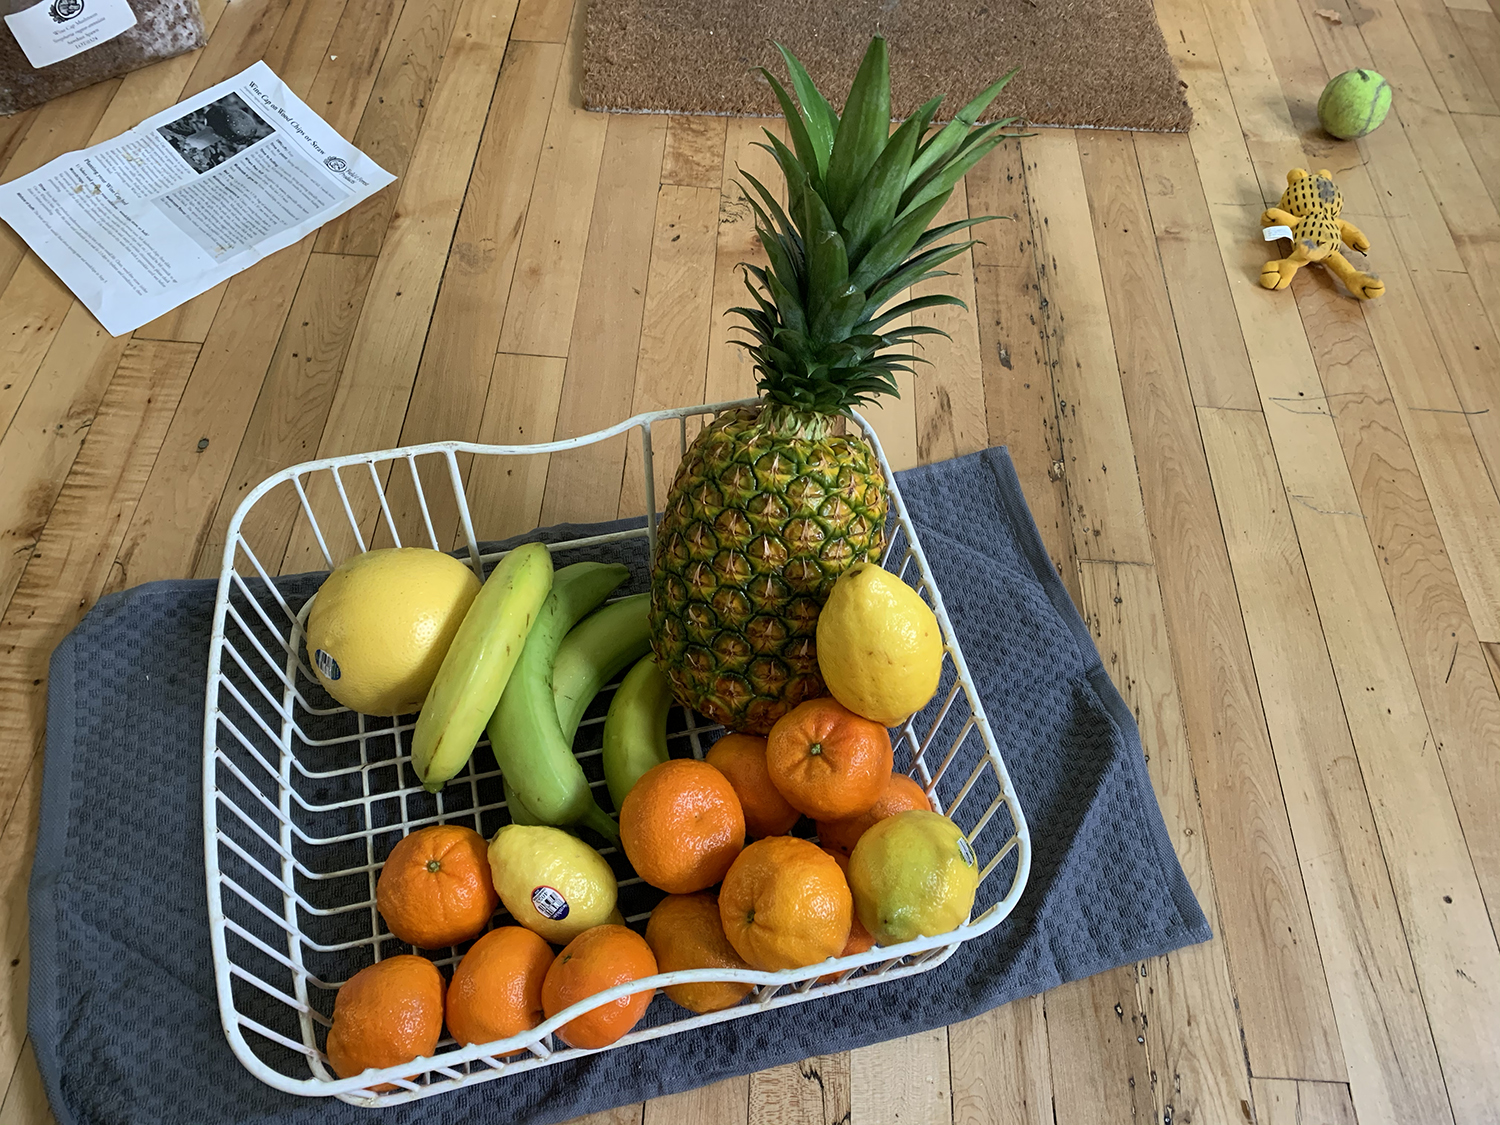 fruit in a basket on a hardwood floor